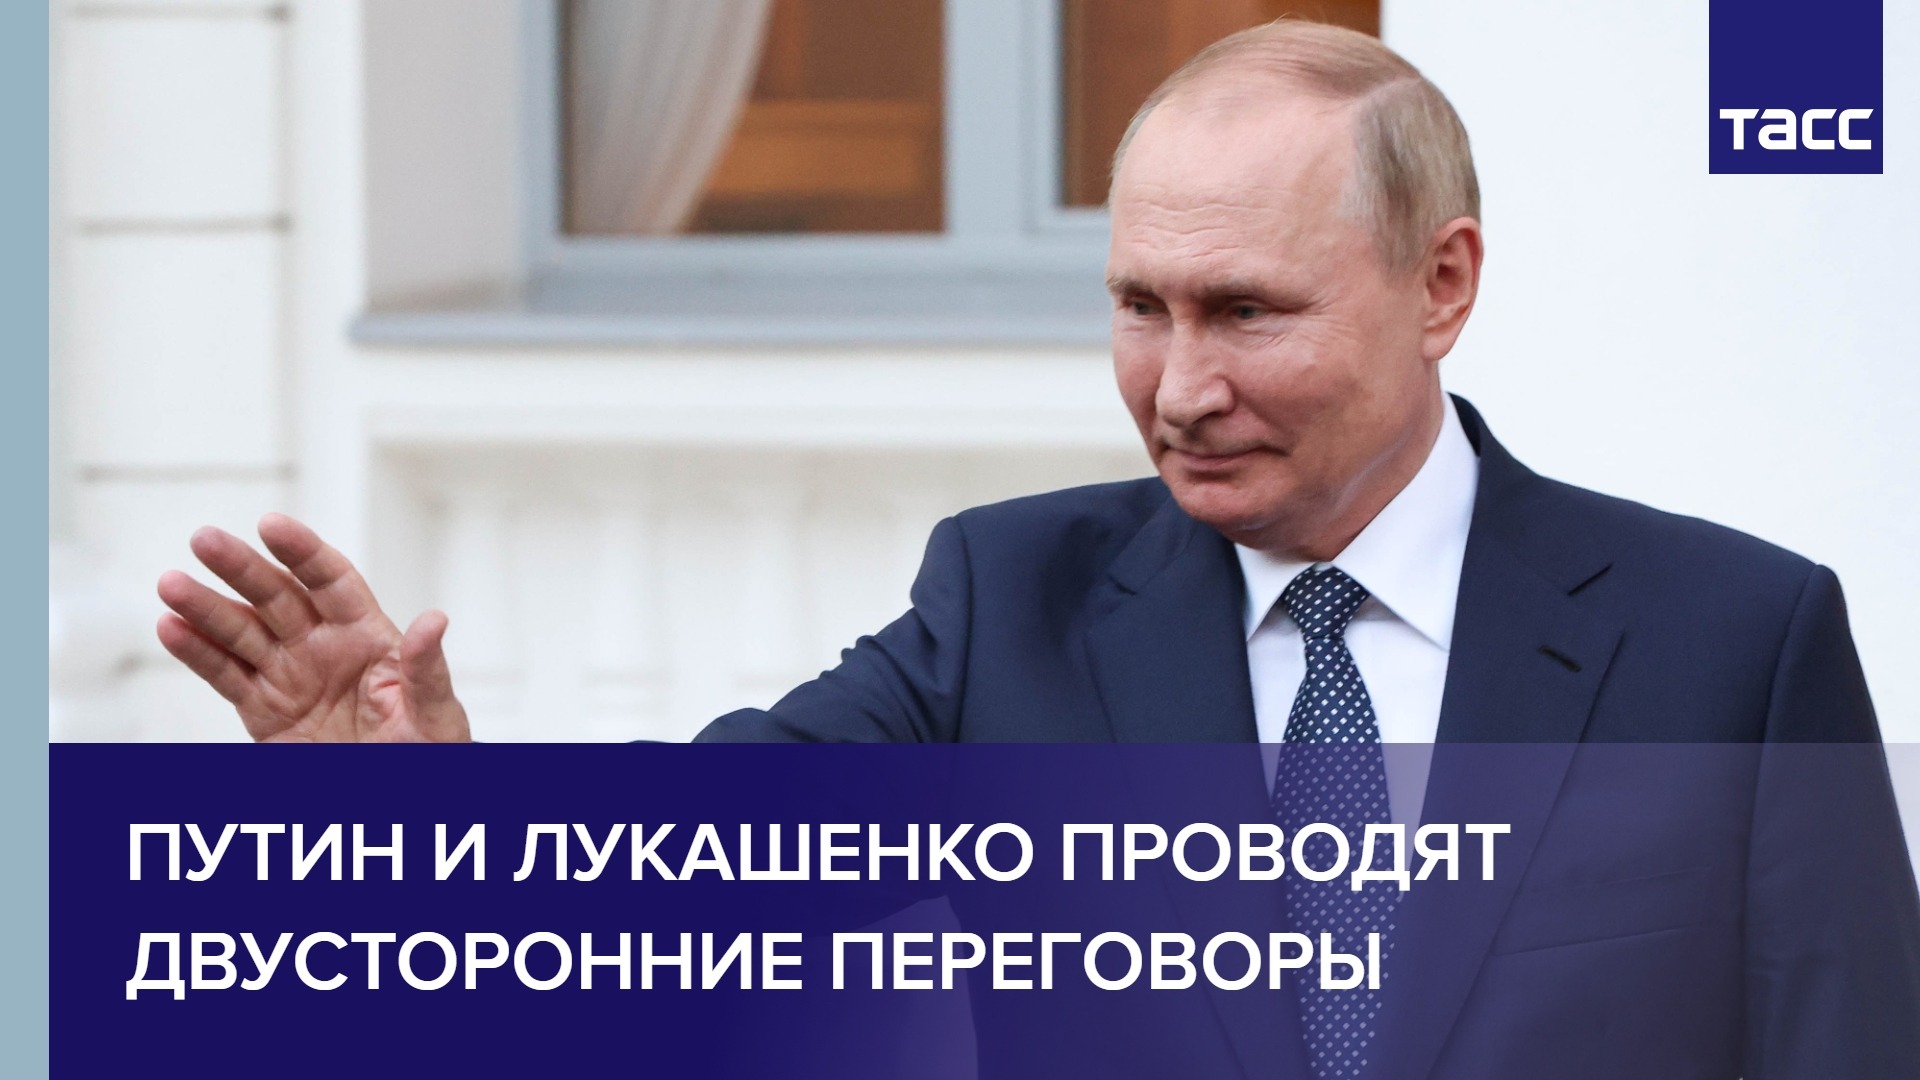 Путин и Лукашенко проводят двусторонние переговоры